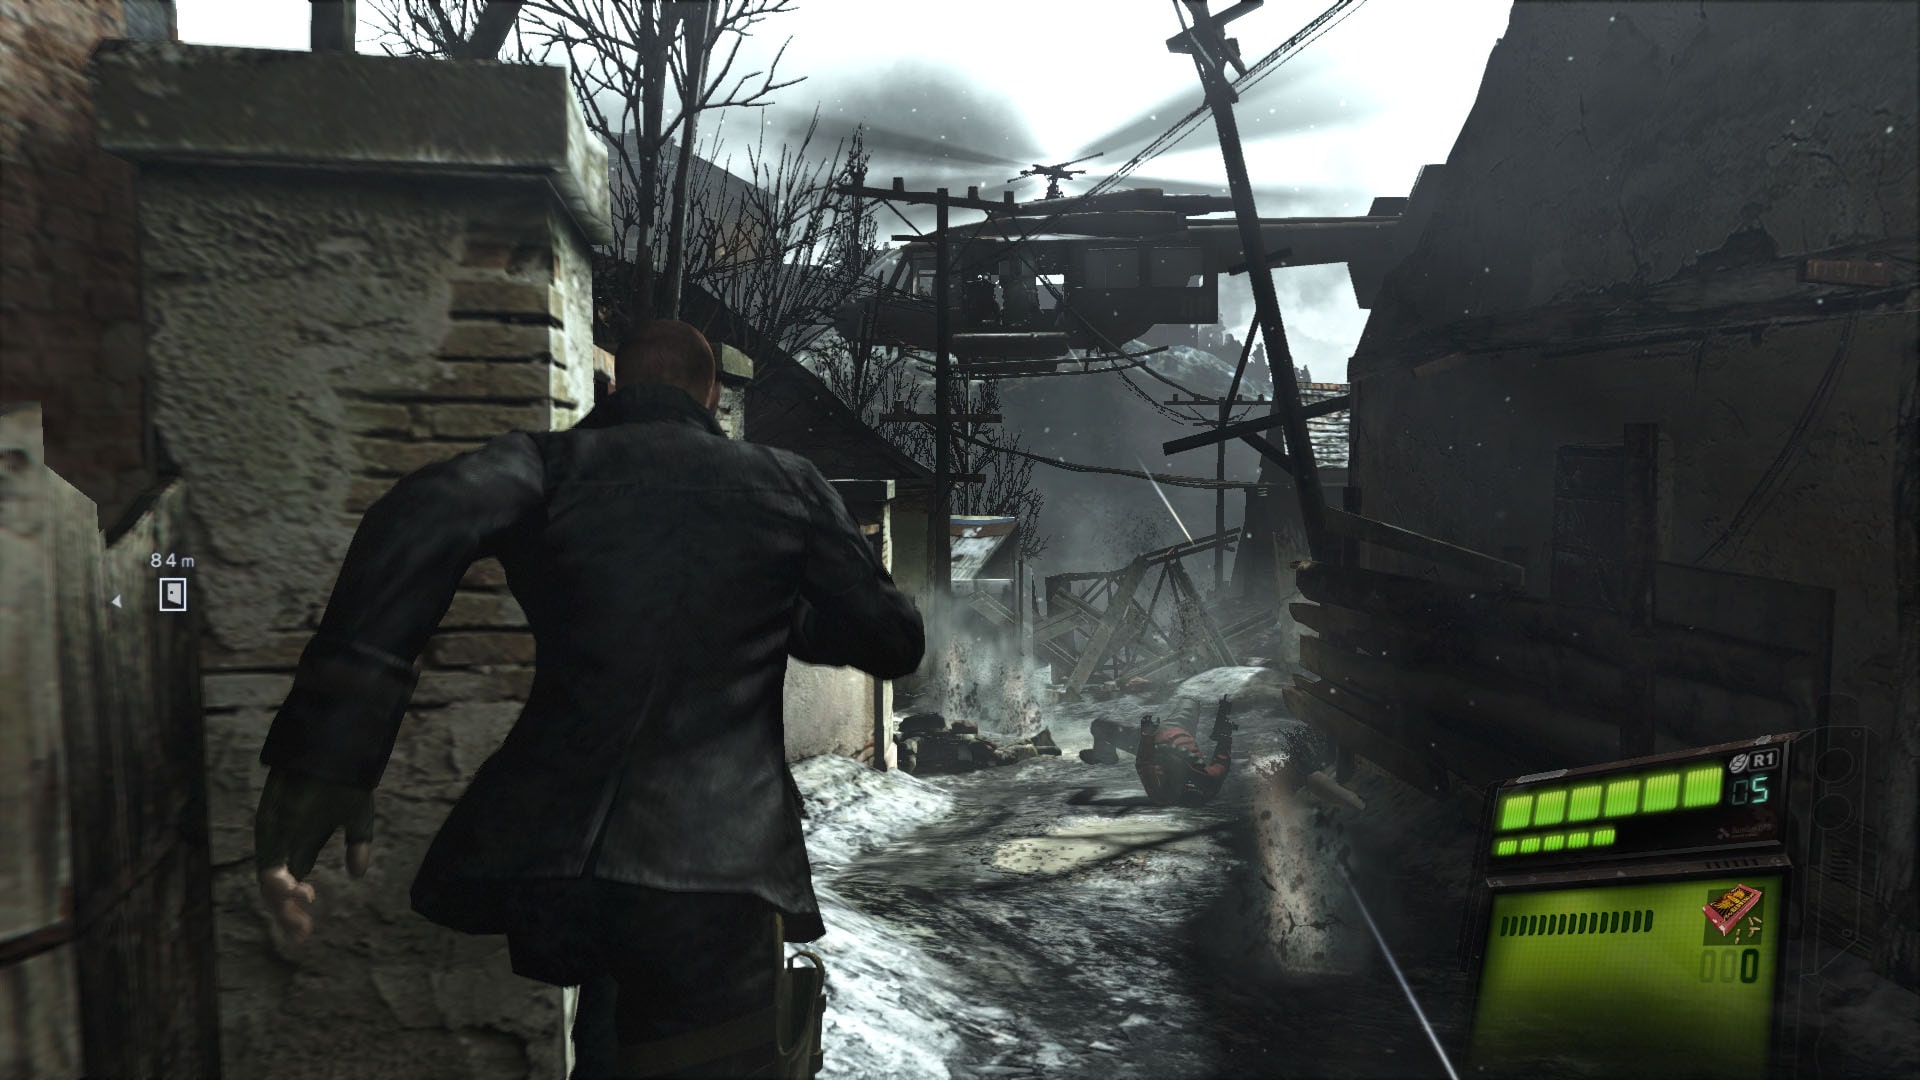 PS4- Resident Evil 6